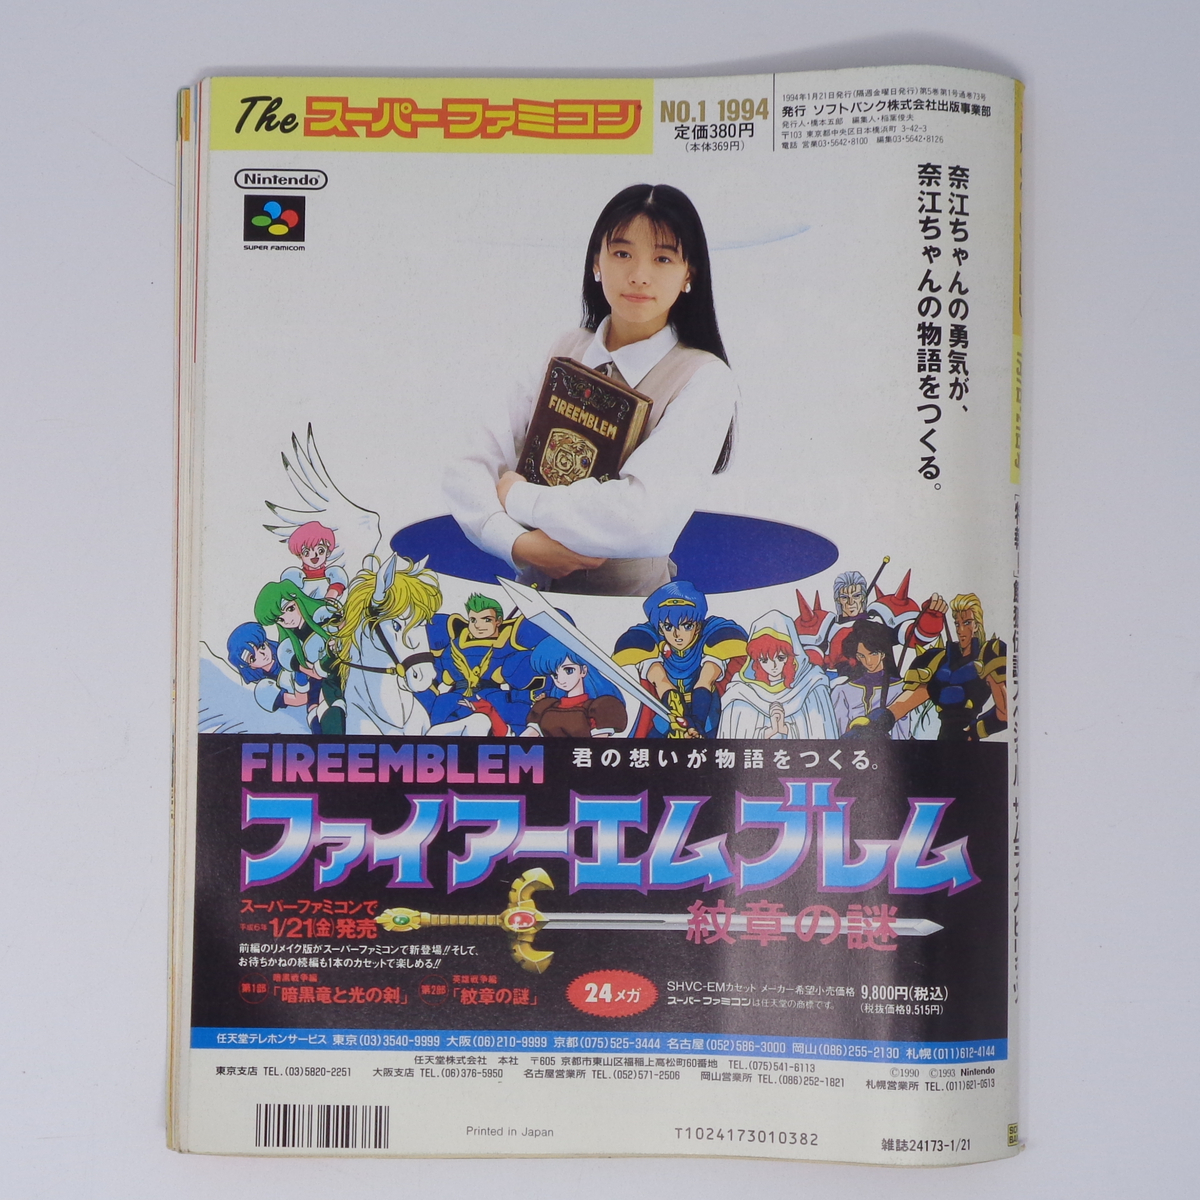 【曲がりあり】The SuperFamicom 1994年1月7・21日号 NO.1 別冊付録無し /ロックマンX//Theスーパーファミコン/ゲーム雑誌[Free Shipping]_画像2